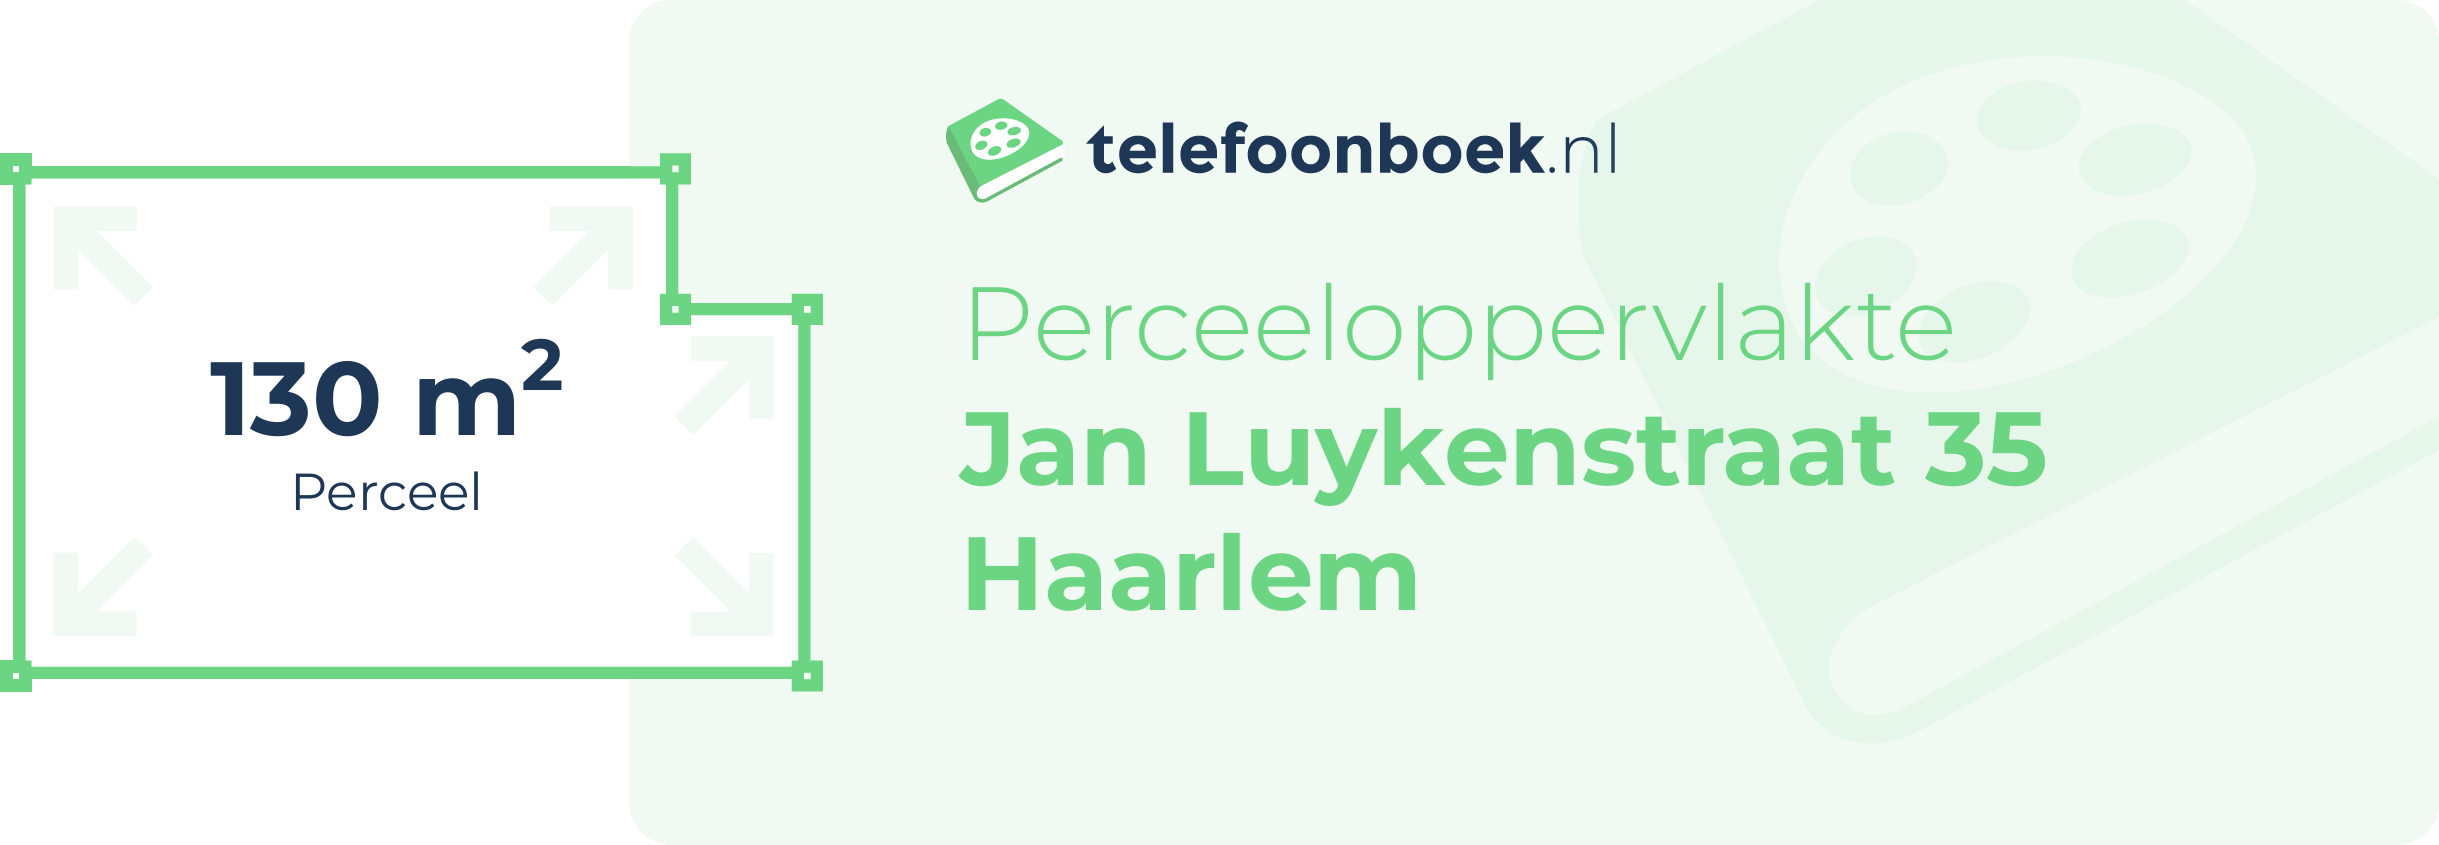 Perceeloppervlakte Jan Luykenstraat 35 Haarlem